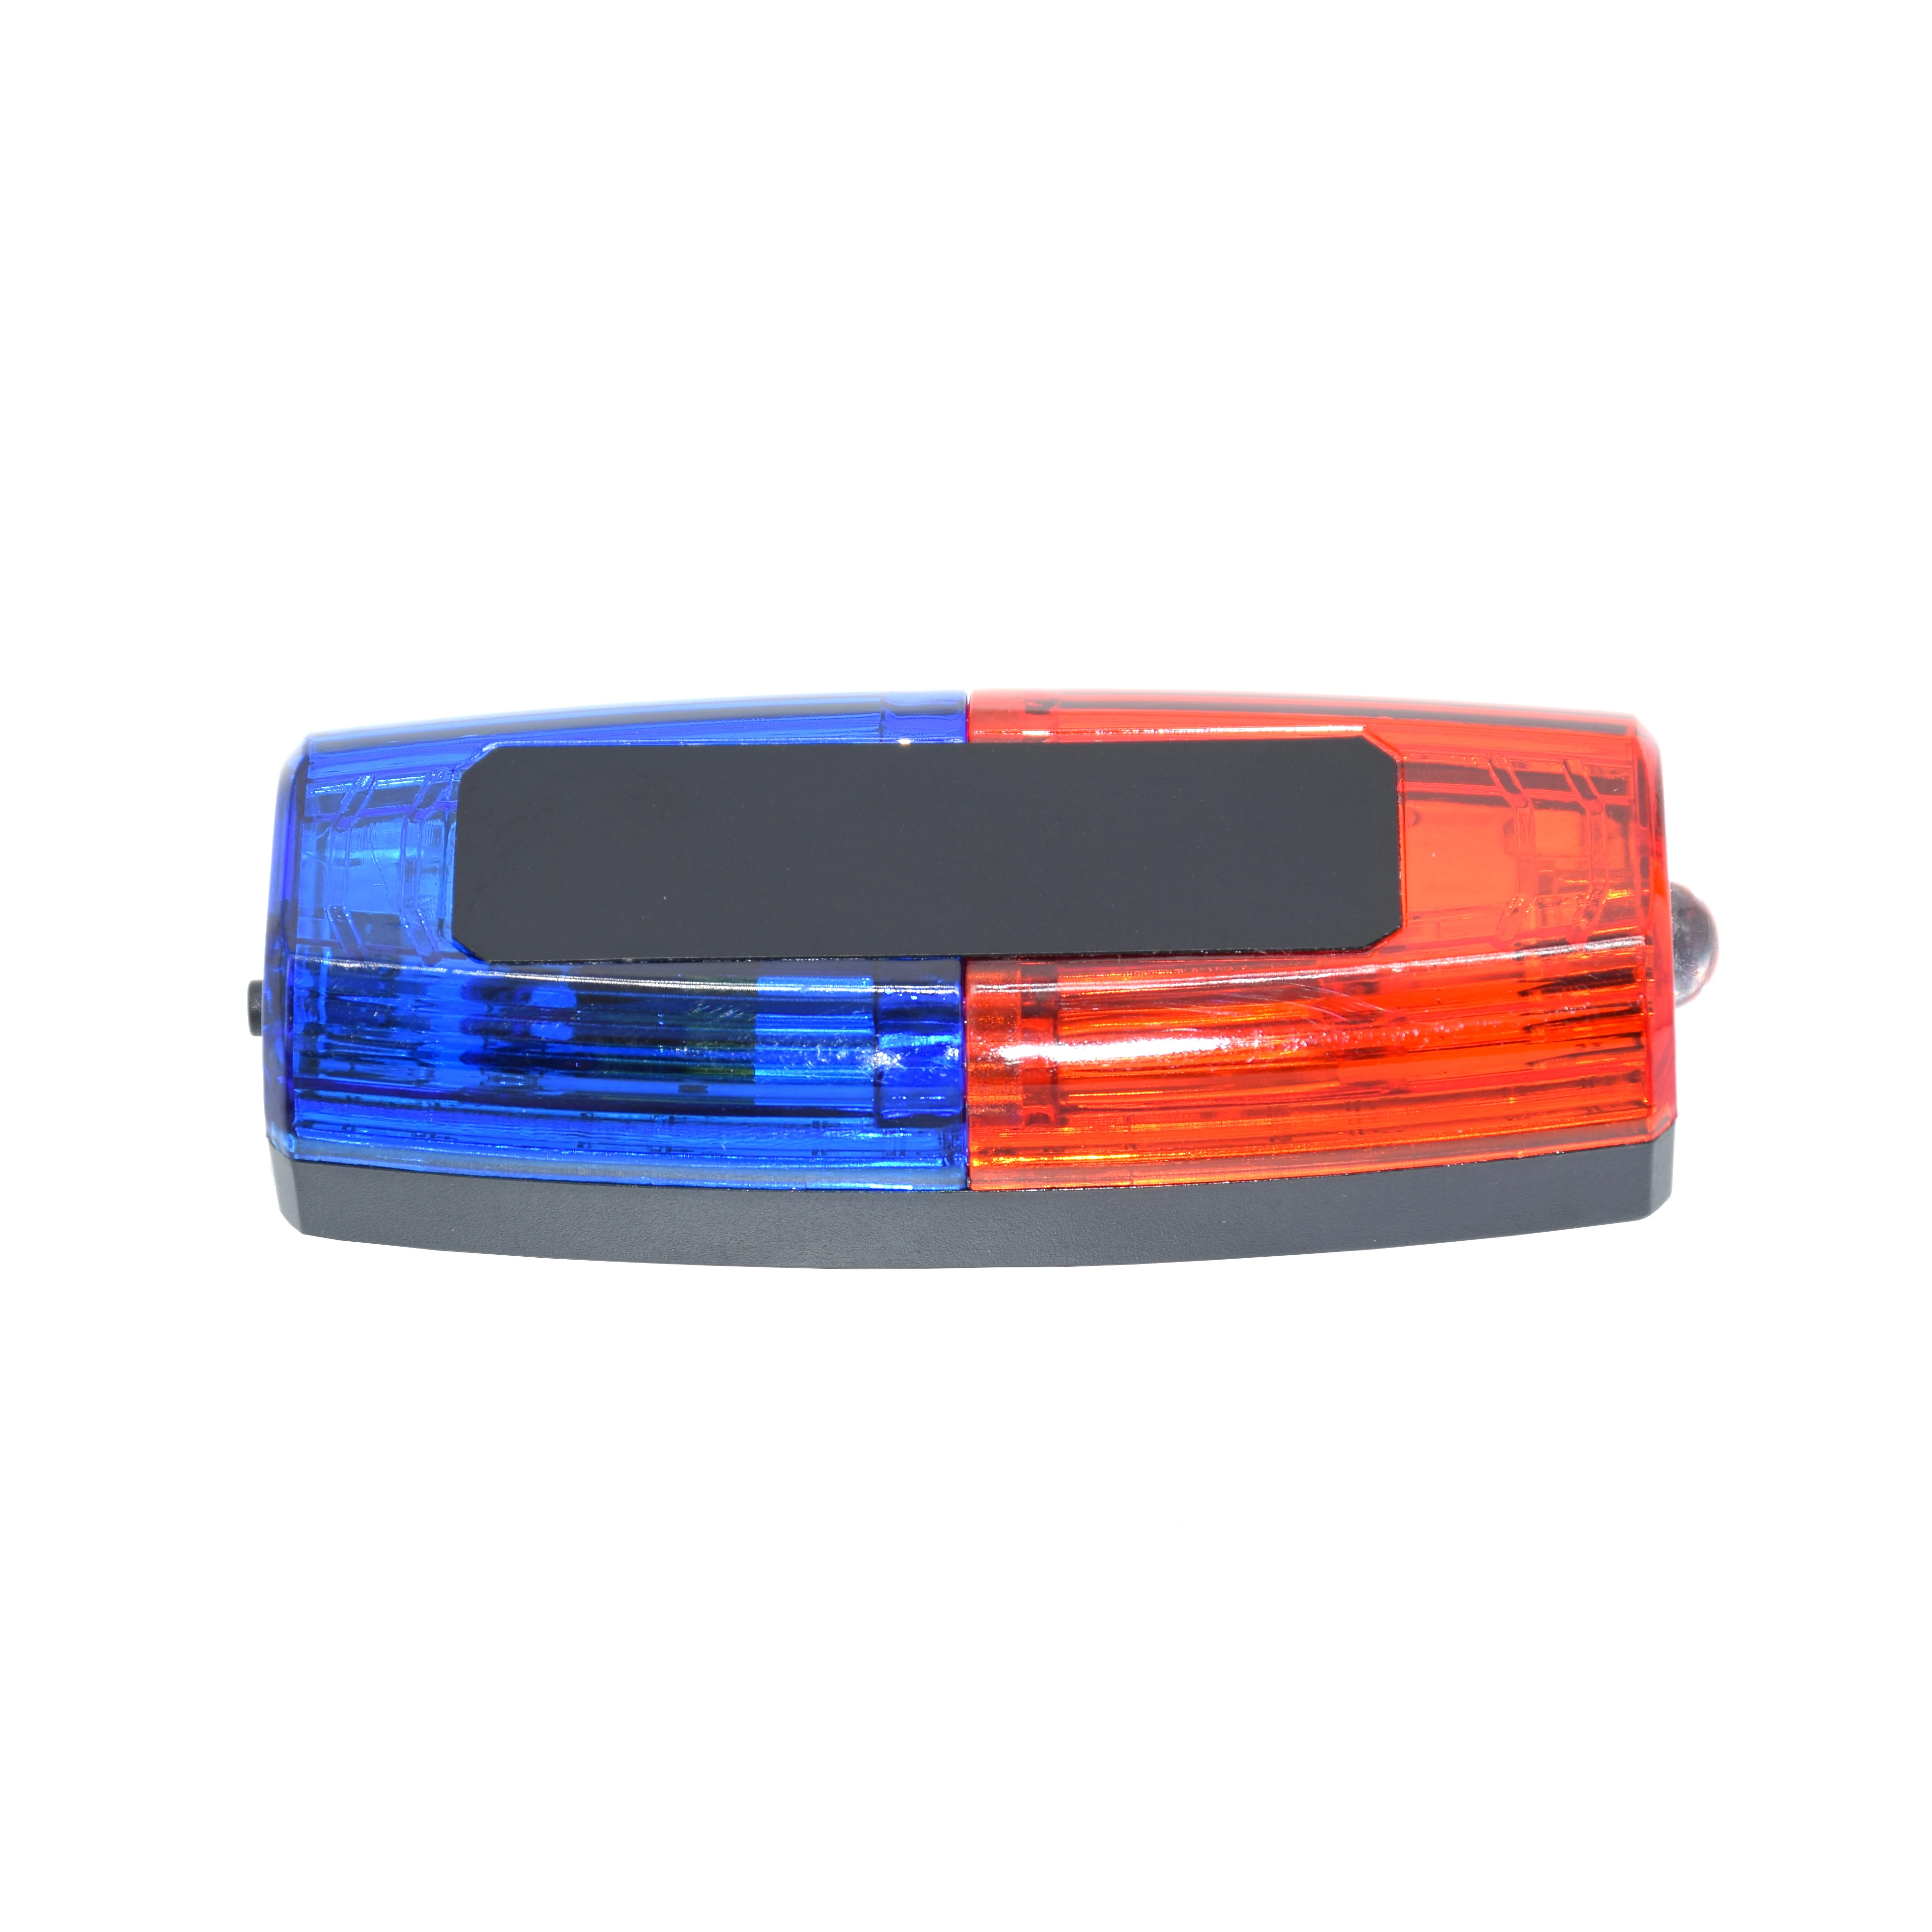 Синий, красный, желтый, красный светодиодный мигающий плечевой фонарь, сигнализация, предупреждение патруля